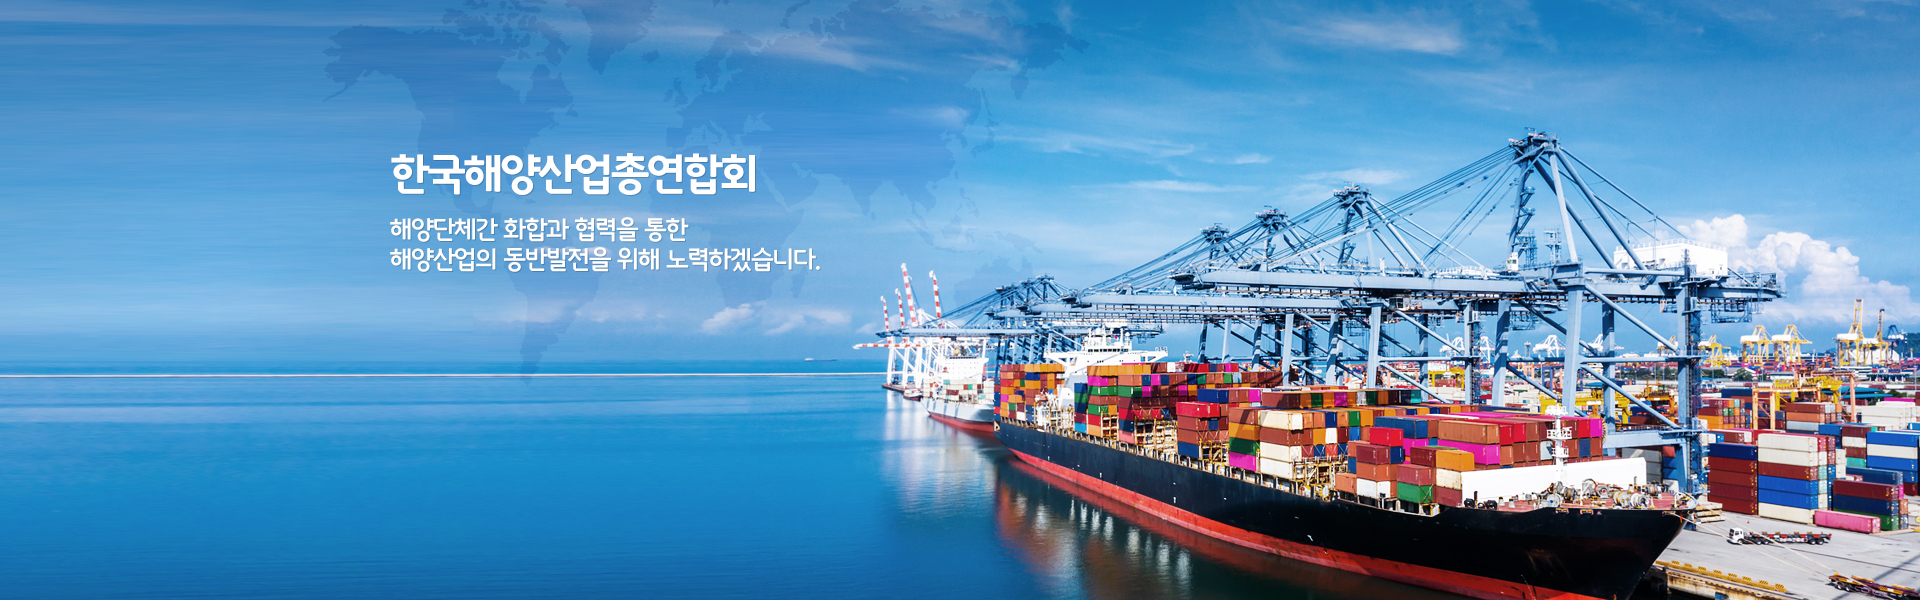 한국해양산업총연합회 해양단체간 화합과 협력을 통한 해양산업의 동반발전을 위해 노력하겠습니다.